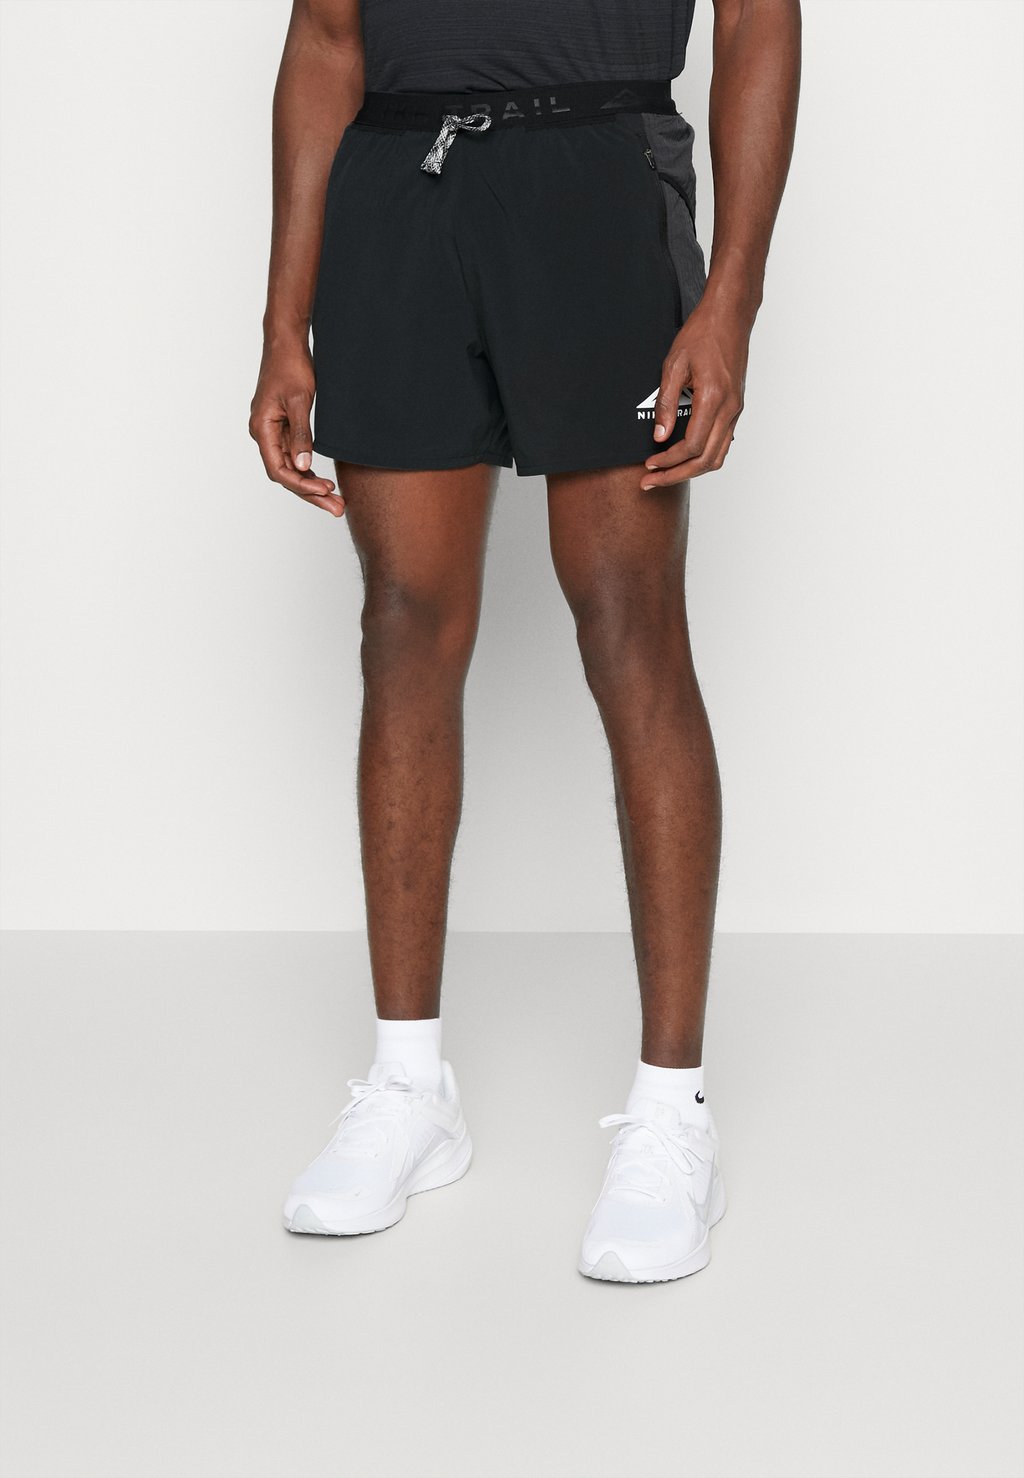 Спортивные шорты Nike Nk Df Secondsunrise, черный / дымчато-серый